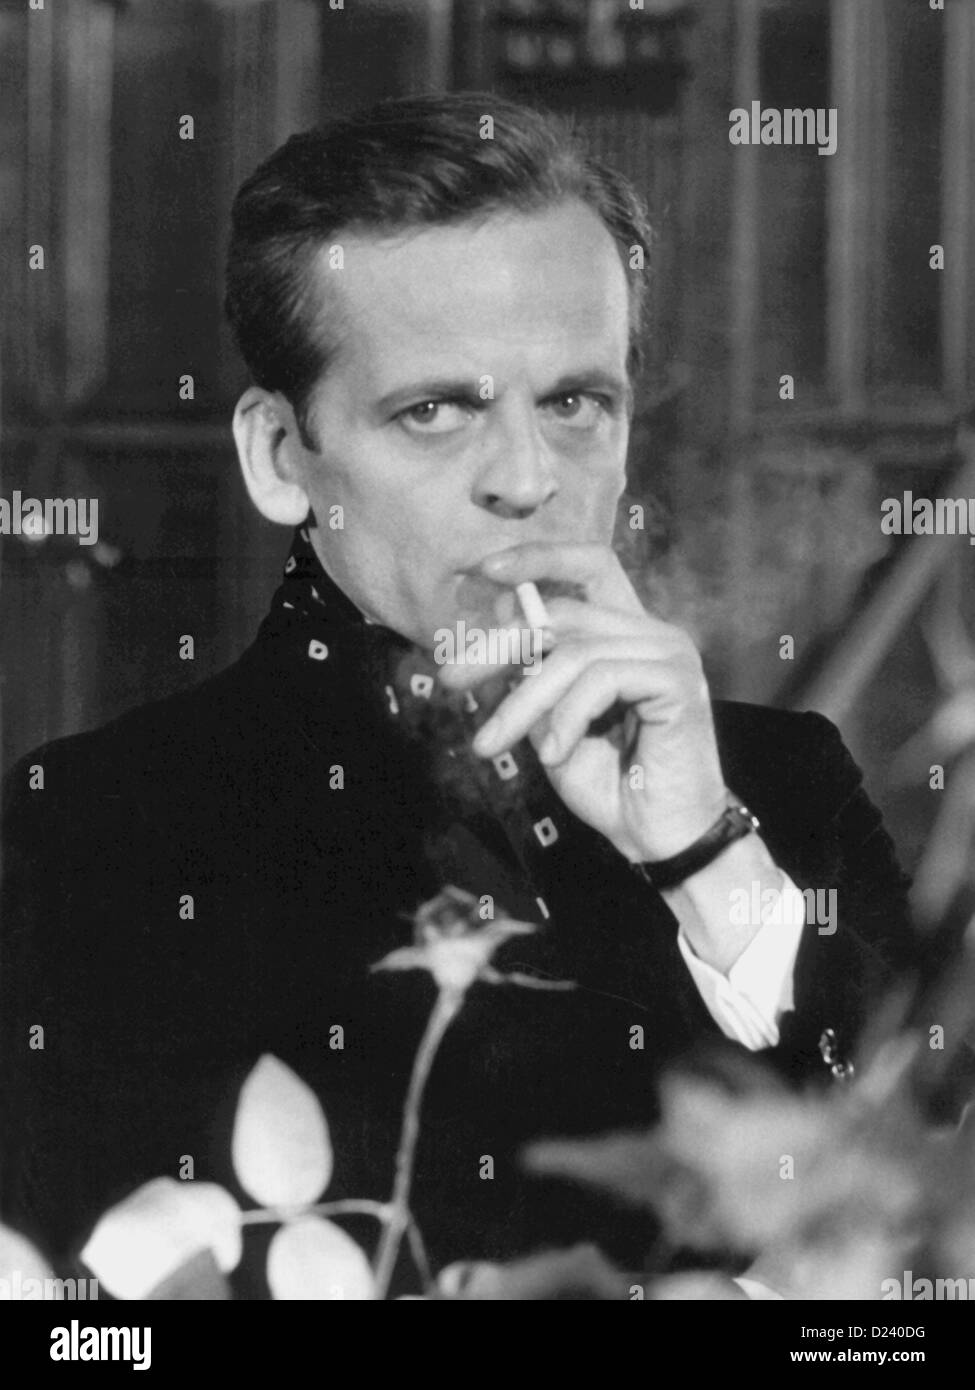 (Dpa file) - attore tedesco Klaus Kinski in una scena di un film di Edgar Wallace film "una doppia faccia' ('Double volto"), 1969. Un'enfant terrible" dell'industria cinematografica, Kinski's film includono 'Buddy Buddy', 'per pochi dollari in più", nonché "Aguirre, der Zorn Gottes' ('Aguirre: l'ira di Dio") e 'Nosferatu: Phantom der Nacht' ('Nosferatu il vampiro"). Kinski è nato il 18 ottobre 1926 a Danzica, Germania (ora Danzica, Polonia) sotto il nome di Nikolaus Guenther Nakszynski e morì il 23 novembre 1991 in Lagunitas, California, di un attacco di cuore. Foto Stock